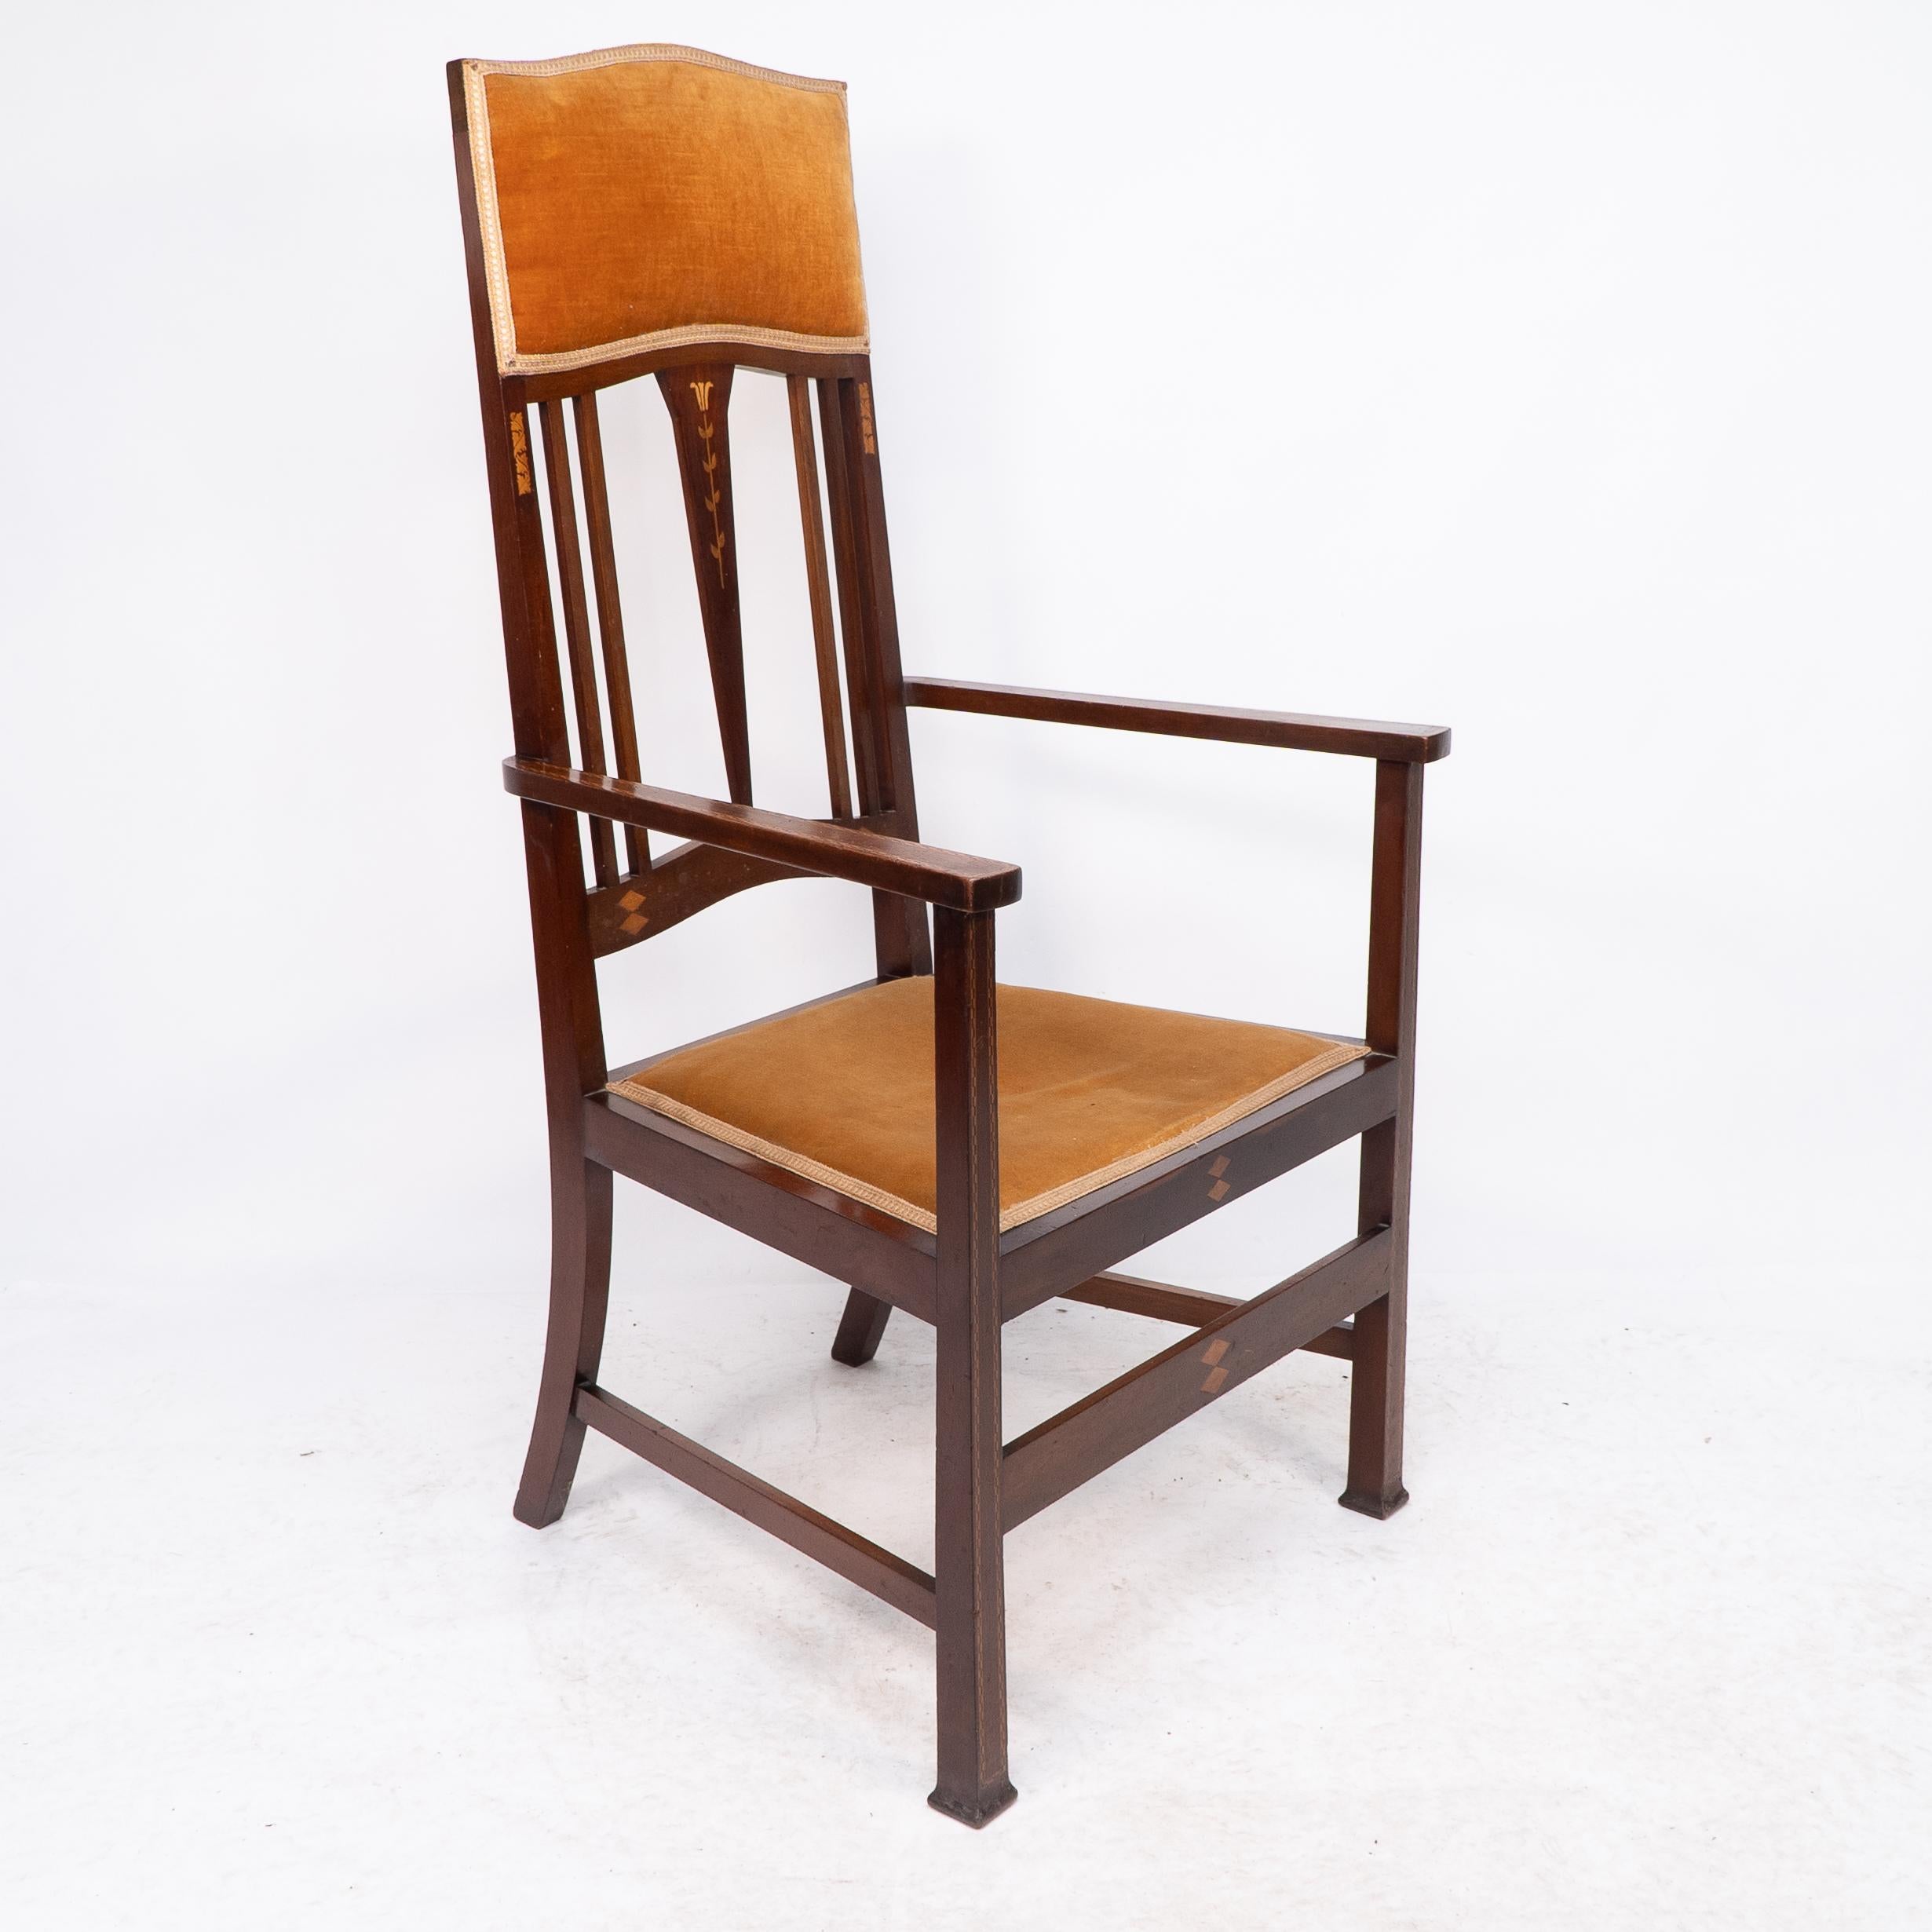 Attribution de Liberty & Co.

Paire de fauteuils Arts & Crafts en acajou avec incrustations florales stylisées.

Bien que je les aie achetés séparément, les deux fauteuils portent le numéro 1877 écrit à la main sur une étiquette ovale située sous le